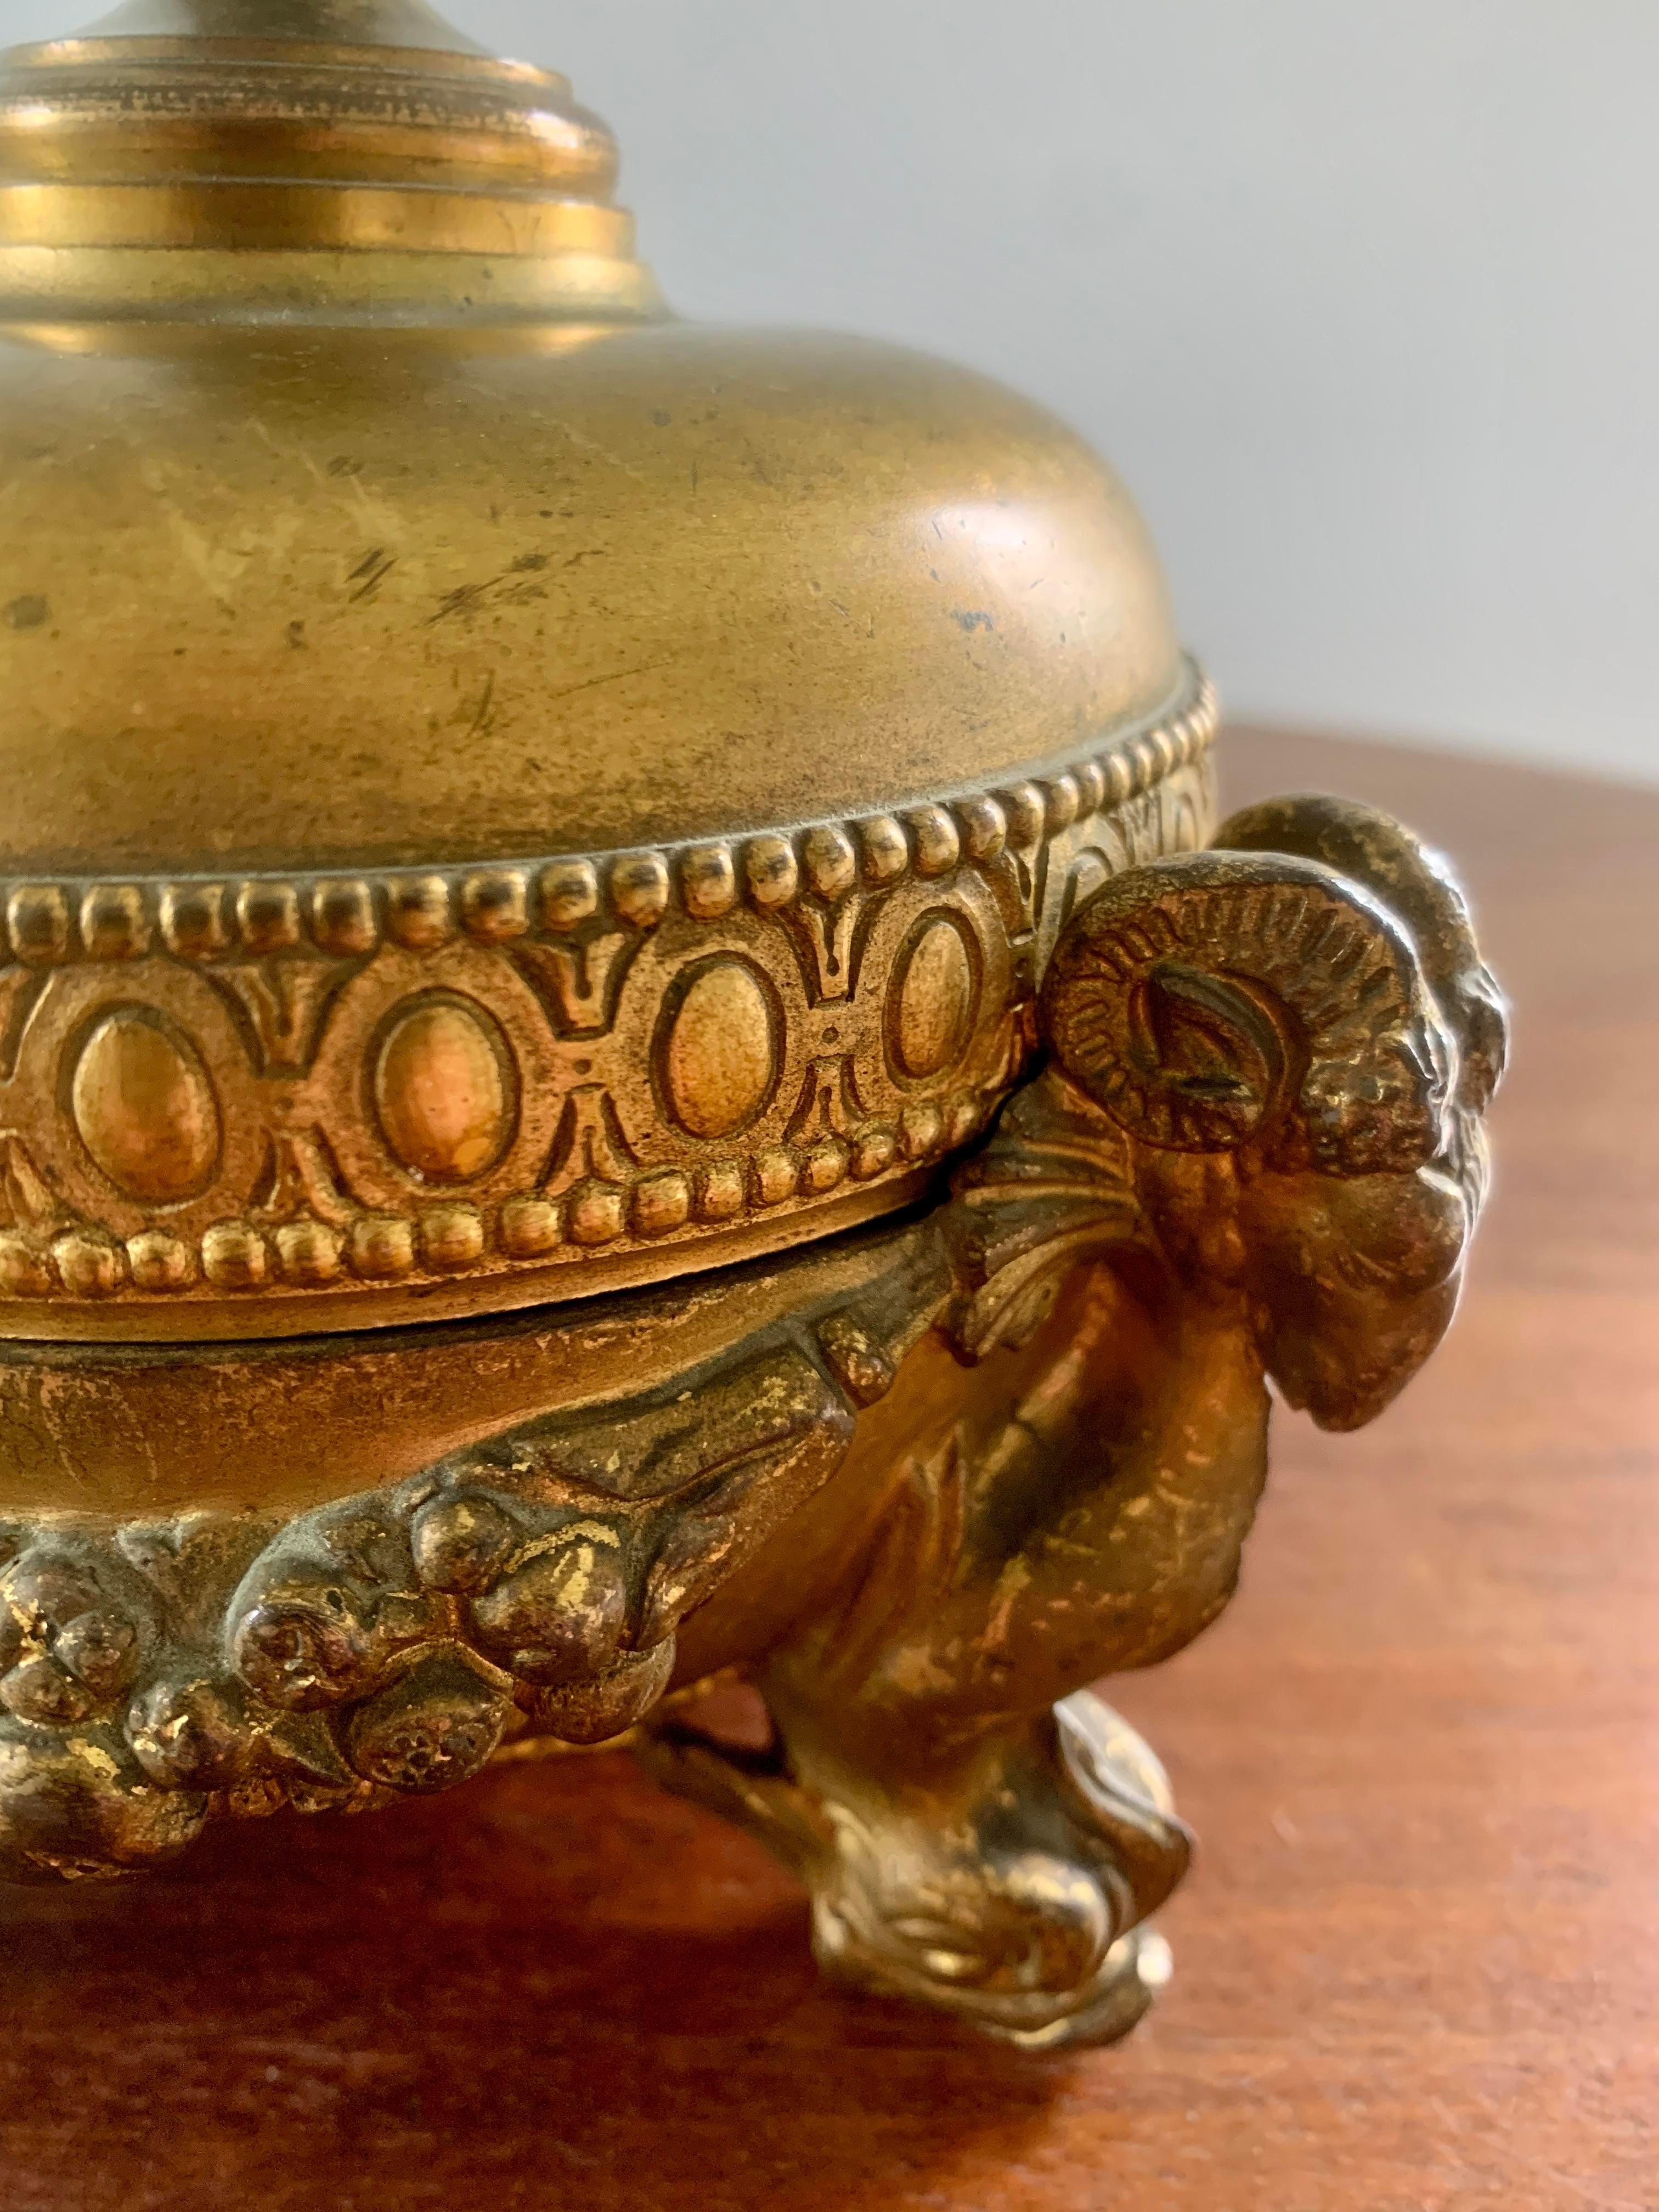 Une magnifique coupe à couvercle en métal doré de style néoclassique Grand Tour avec des têtes de bélier et des pieds en forme de dauphin.

Circa début du 20e siècle

Mesures : 6,25